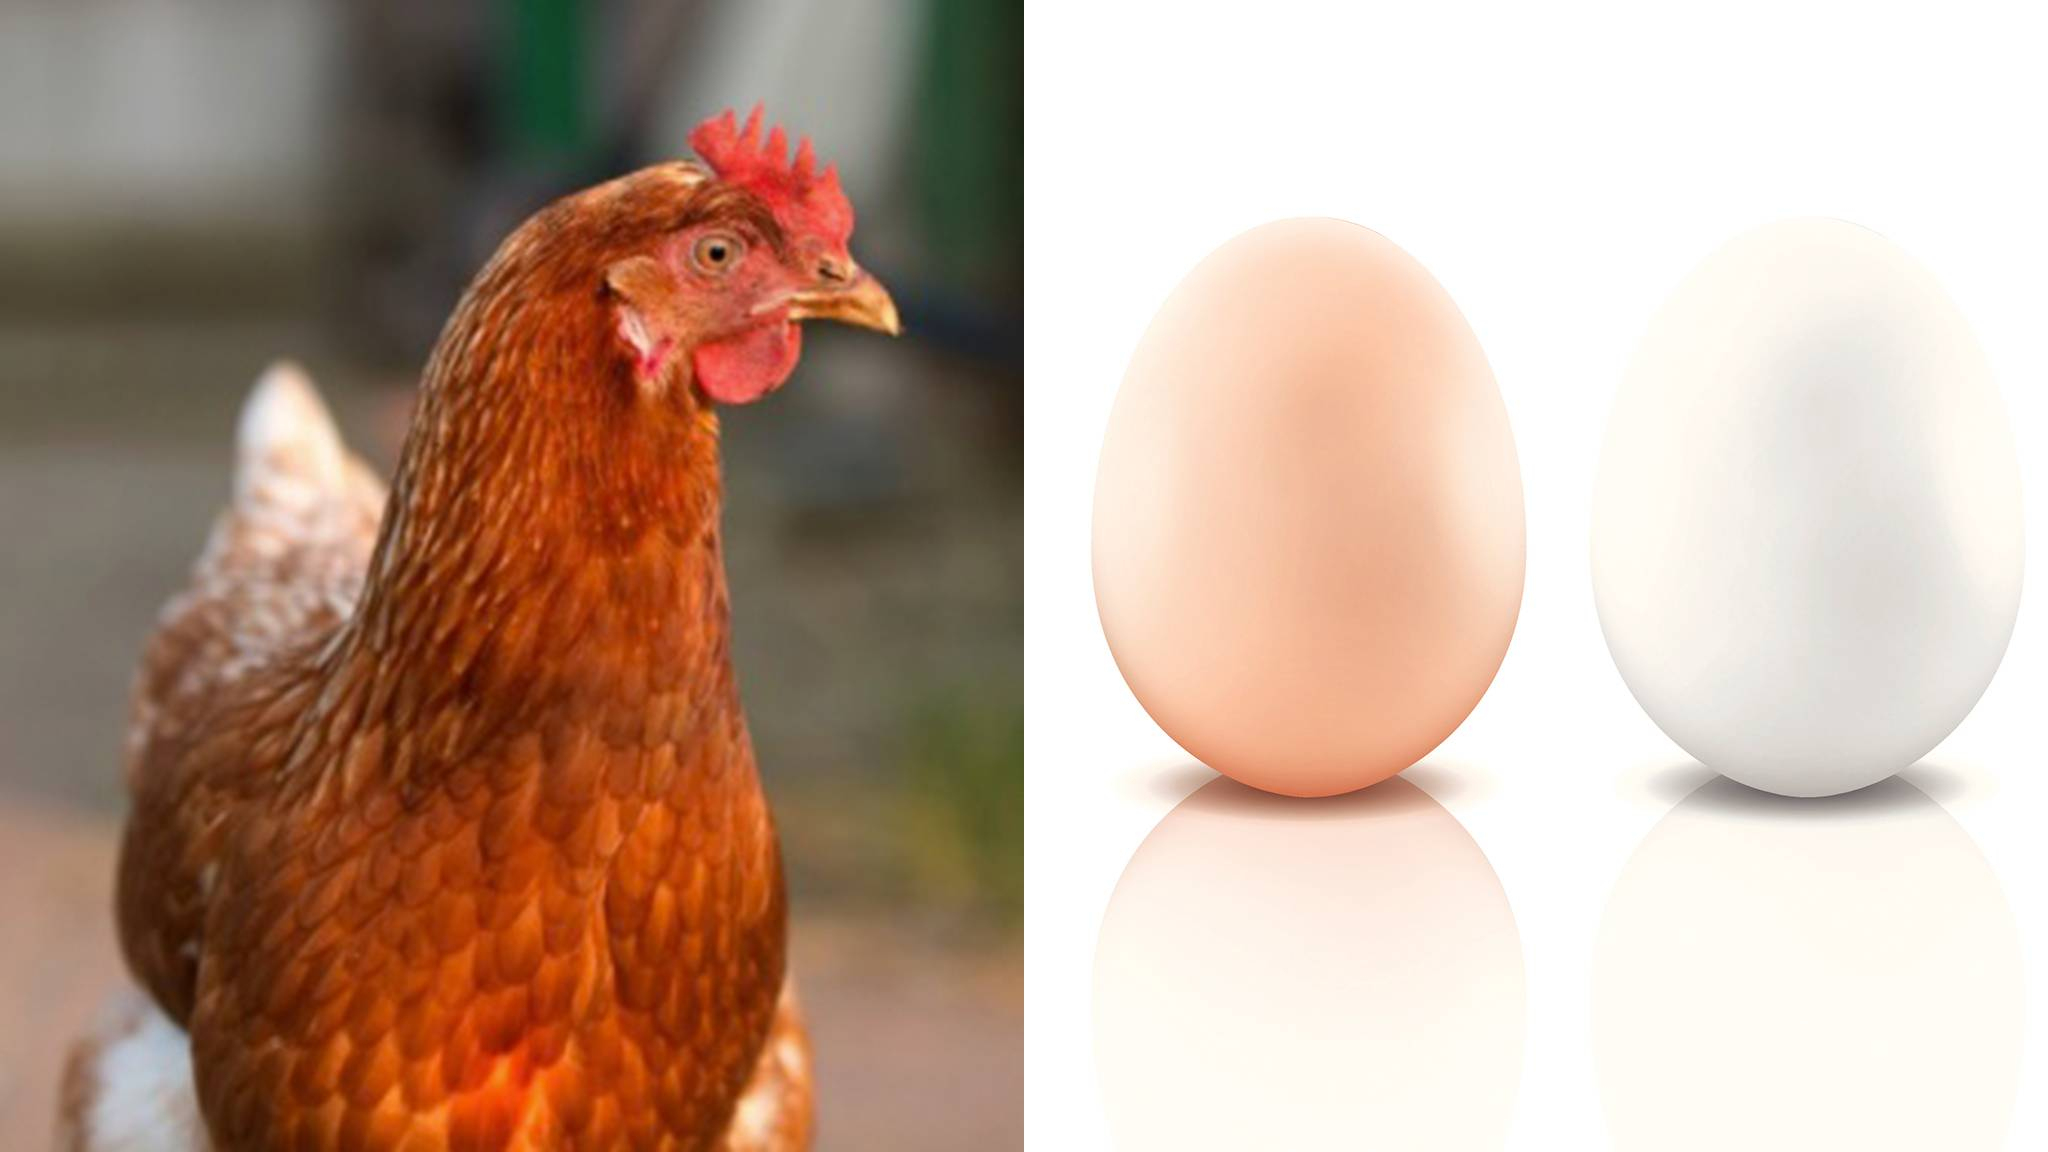 Braune Oder Weiße Eierschale: Dieses Körperteil Eines Huhns Verrät Die  Eierfarbe in Warum Gibt Es Braune Und Weiße Hühnereier